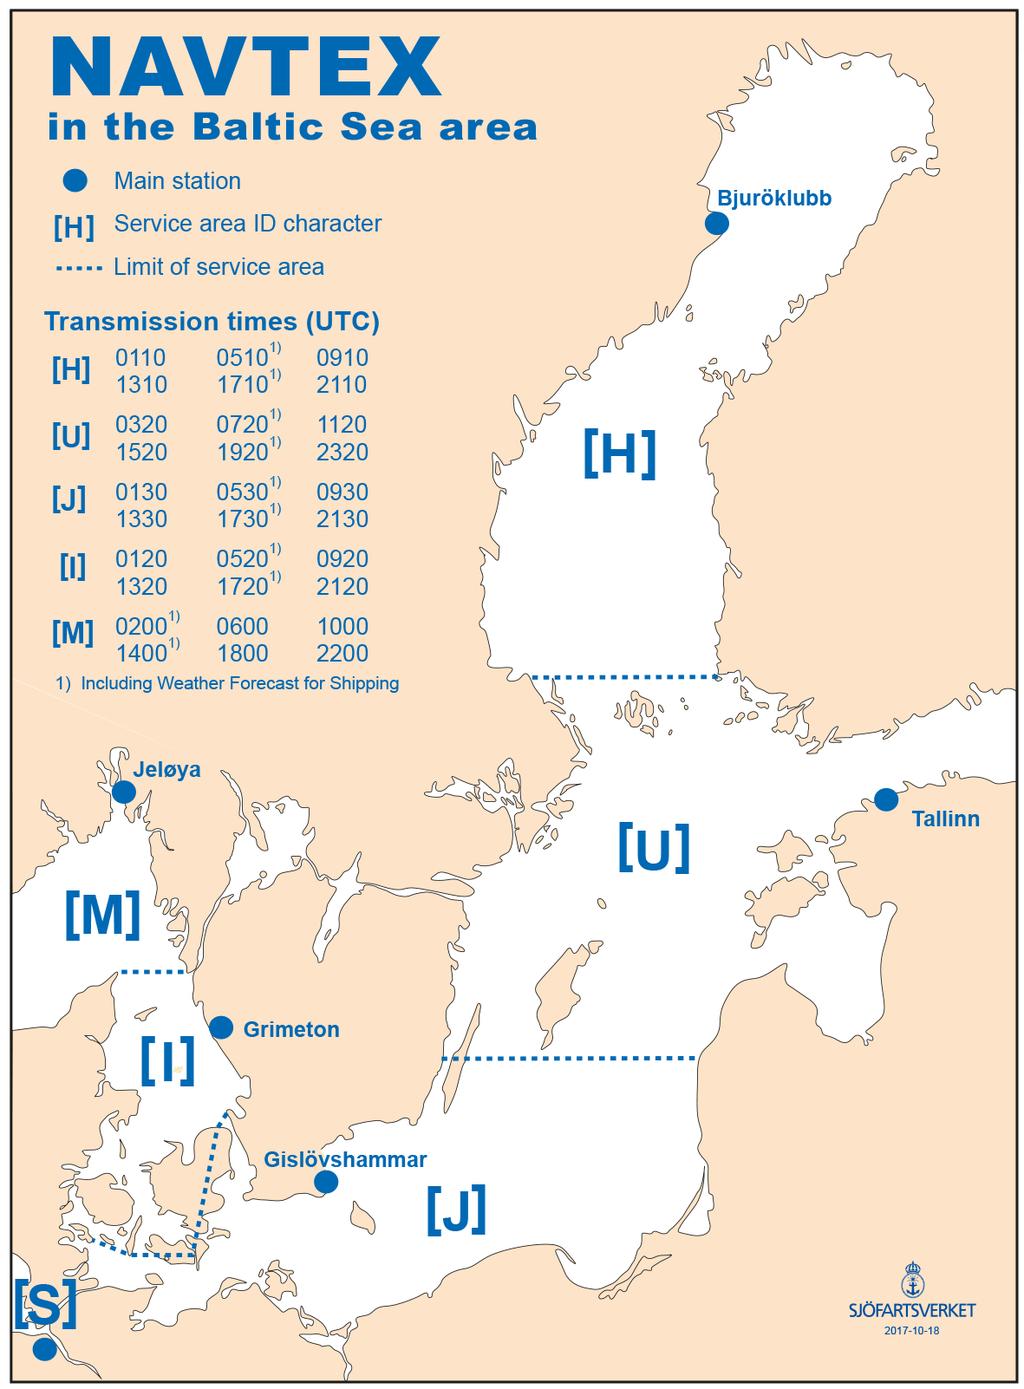 2017-11-30 5 Nr 679 NAVTEX-karta Sjöfartsverket, Norrköping. Publ. 30 november 2017 * 12678 Sjökort: 612, 6142 Nytryck av sjökort. Ny edition av kort 612 och 6141.